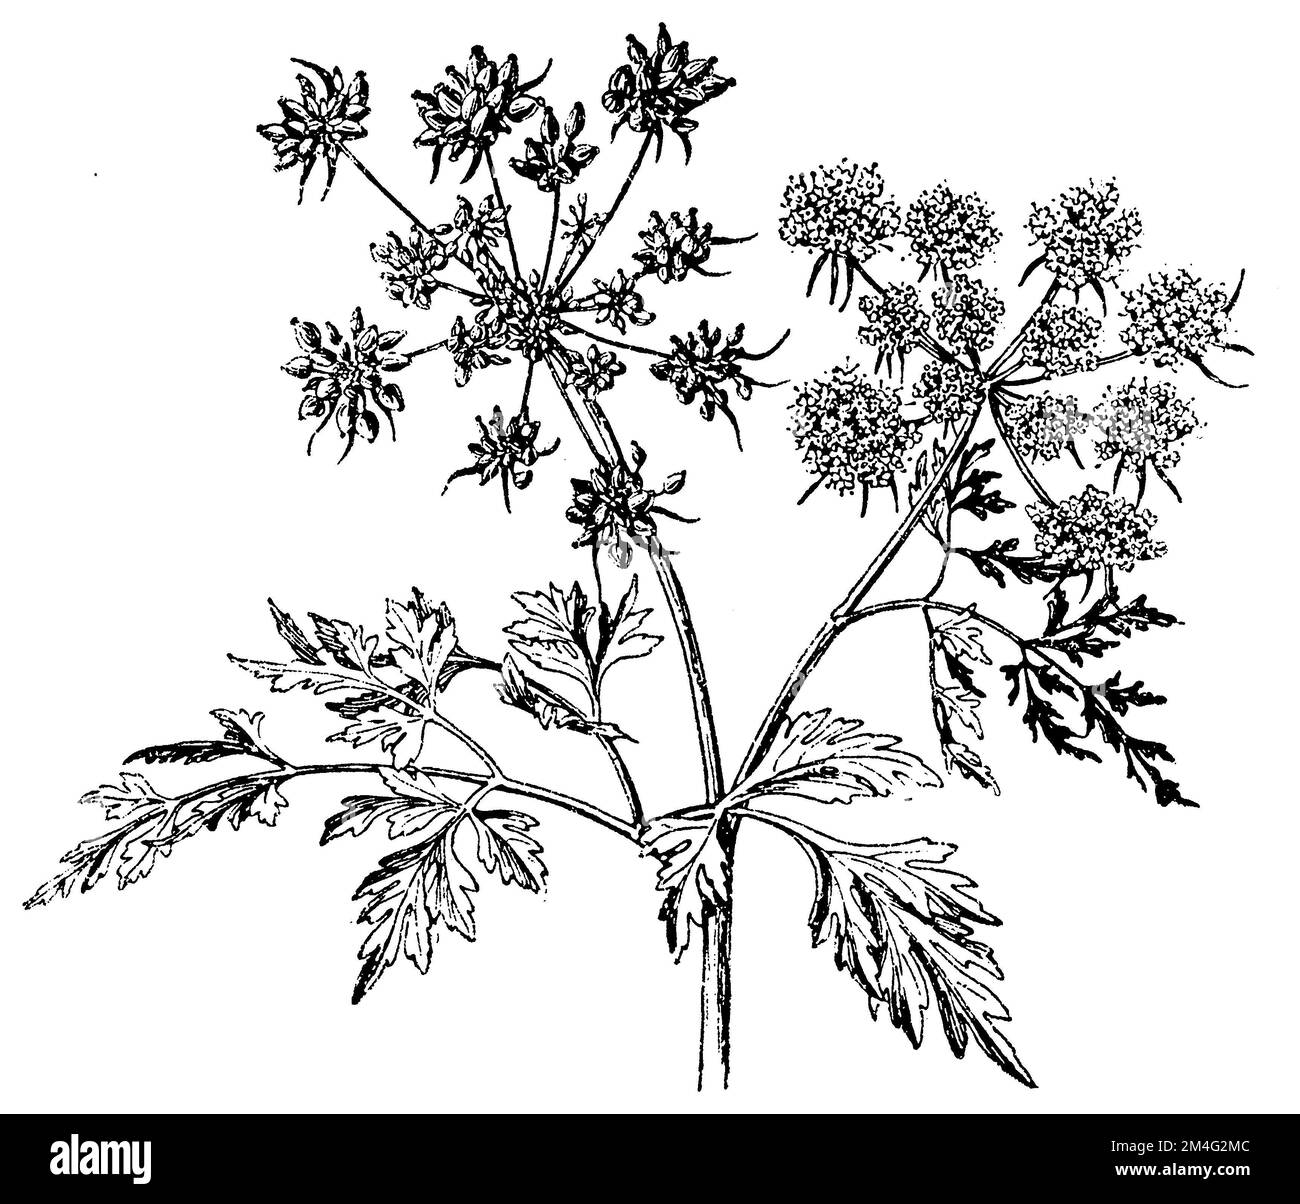 Narren-Petersilie, Narren-Petersilie oder GiftPetersilie, Aethusa cynapium, (Botanisches Buch, 1910), Hundspetersilie, Petite Ciguë ou Ciguë des jardins Stockfoto